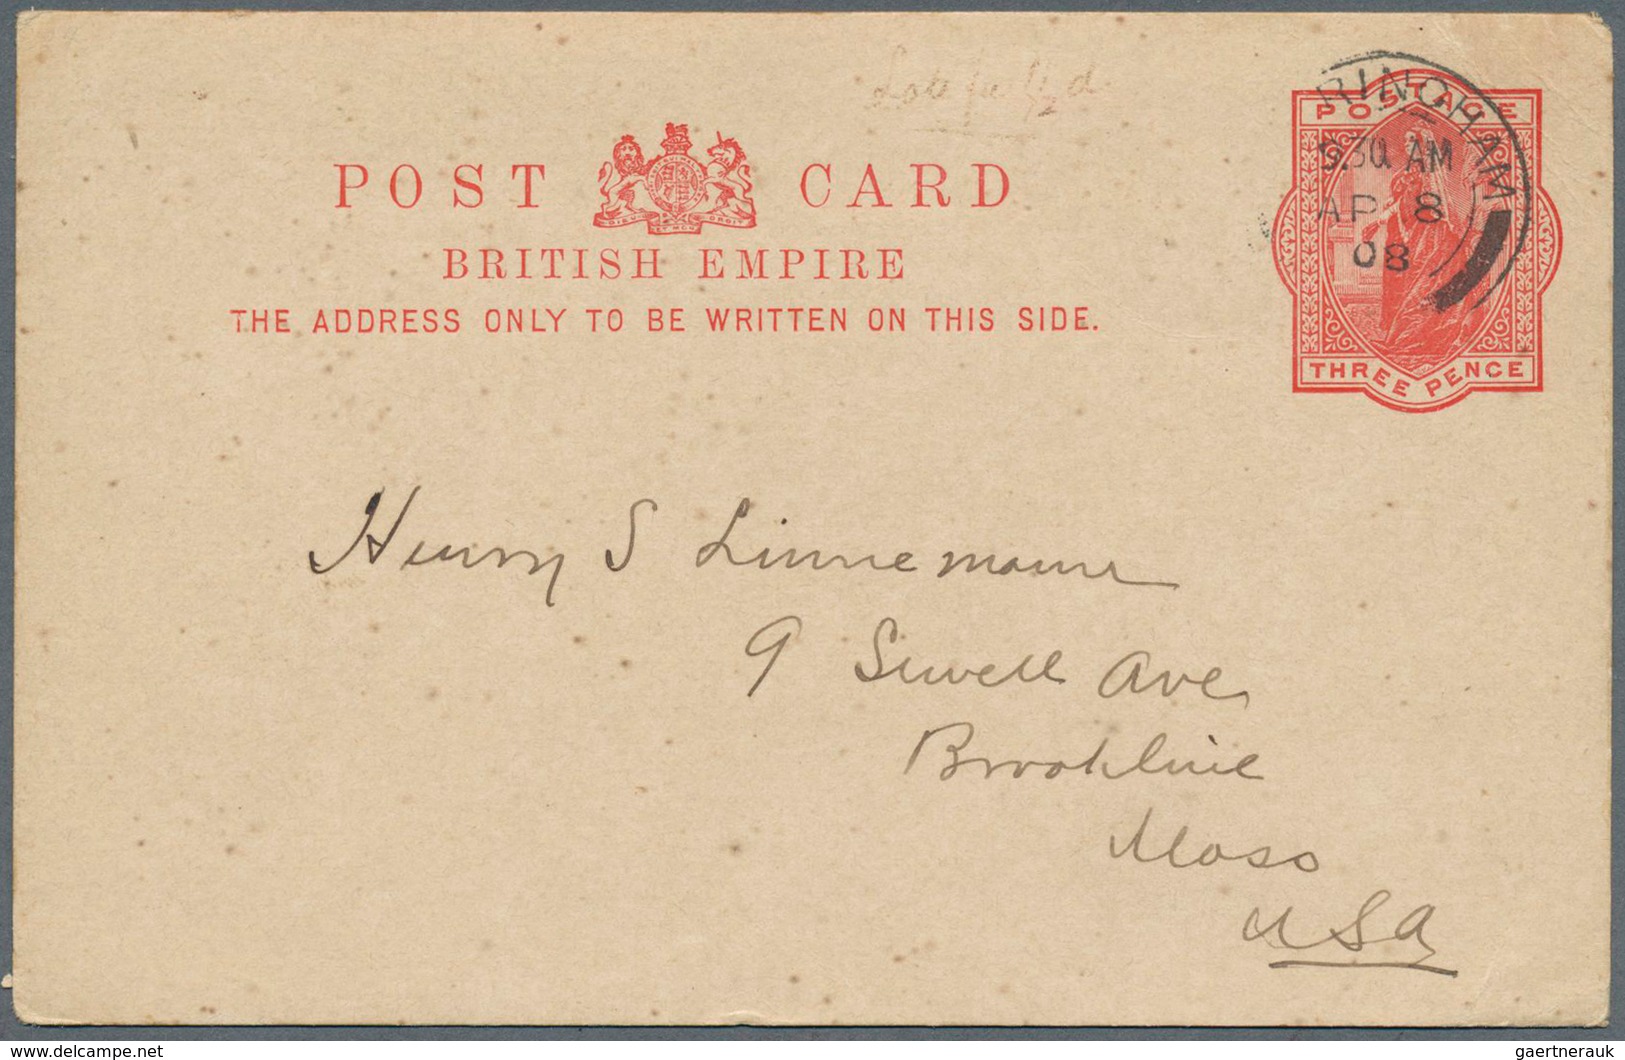 26789 Großbritannien - Ganzsachen: 1870/1970 ca., comprehensive collection with ca.140 postal stationeries